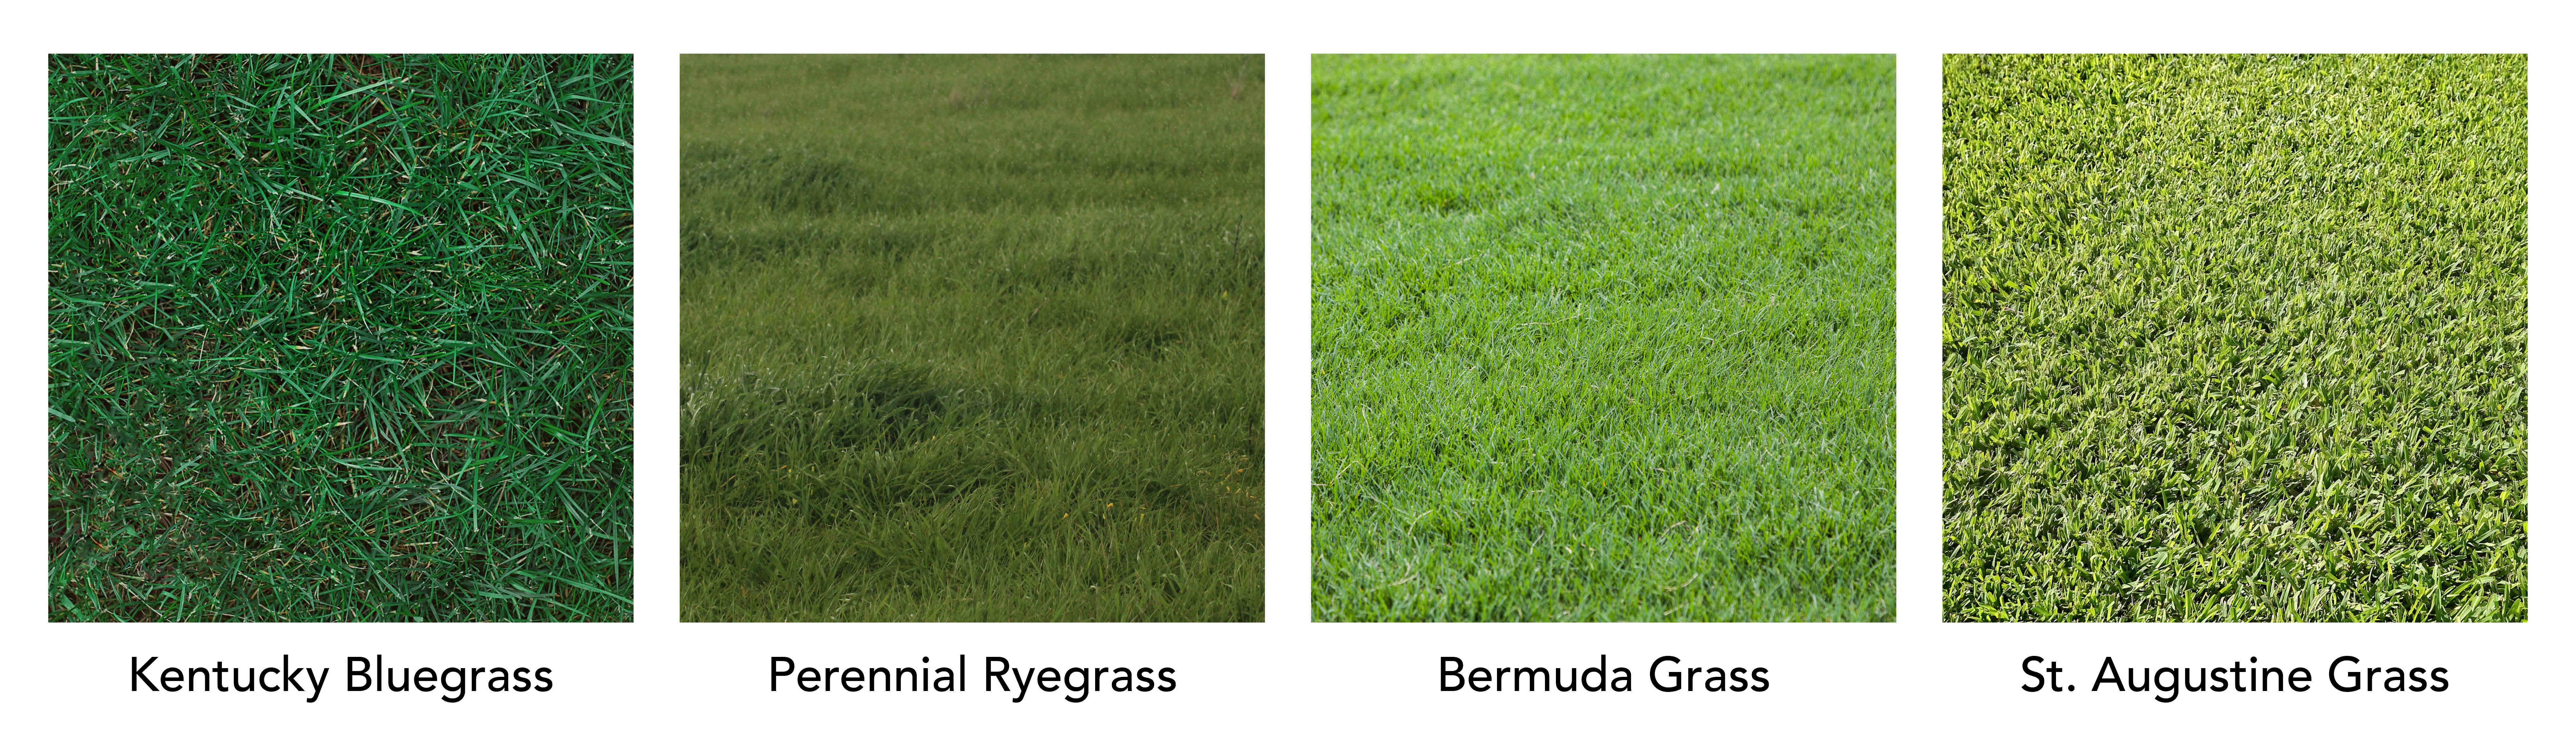 green grass comparison 